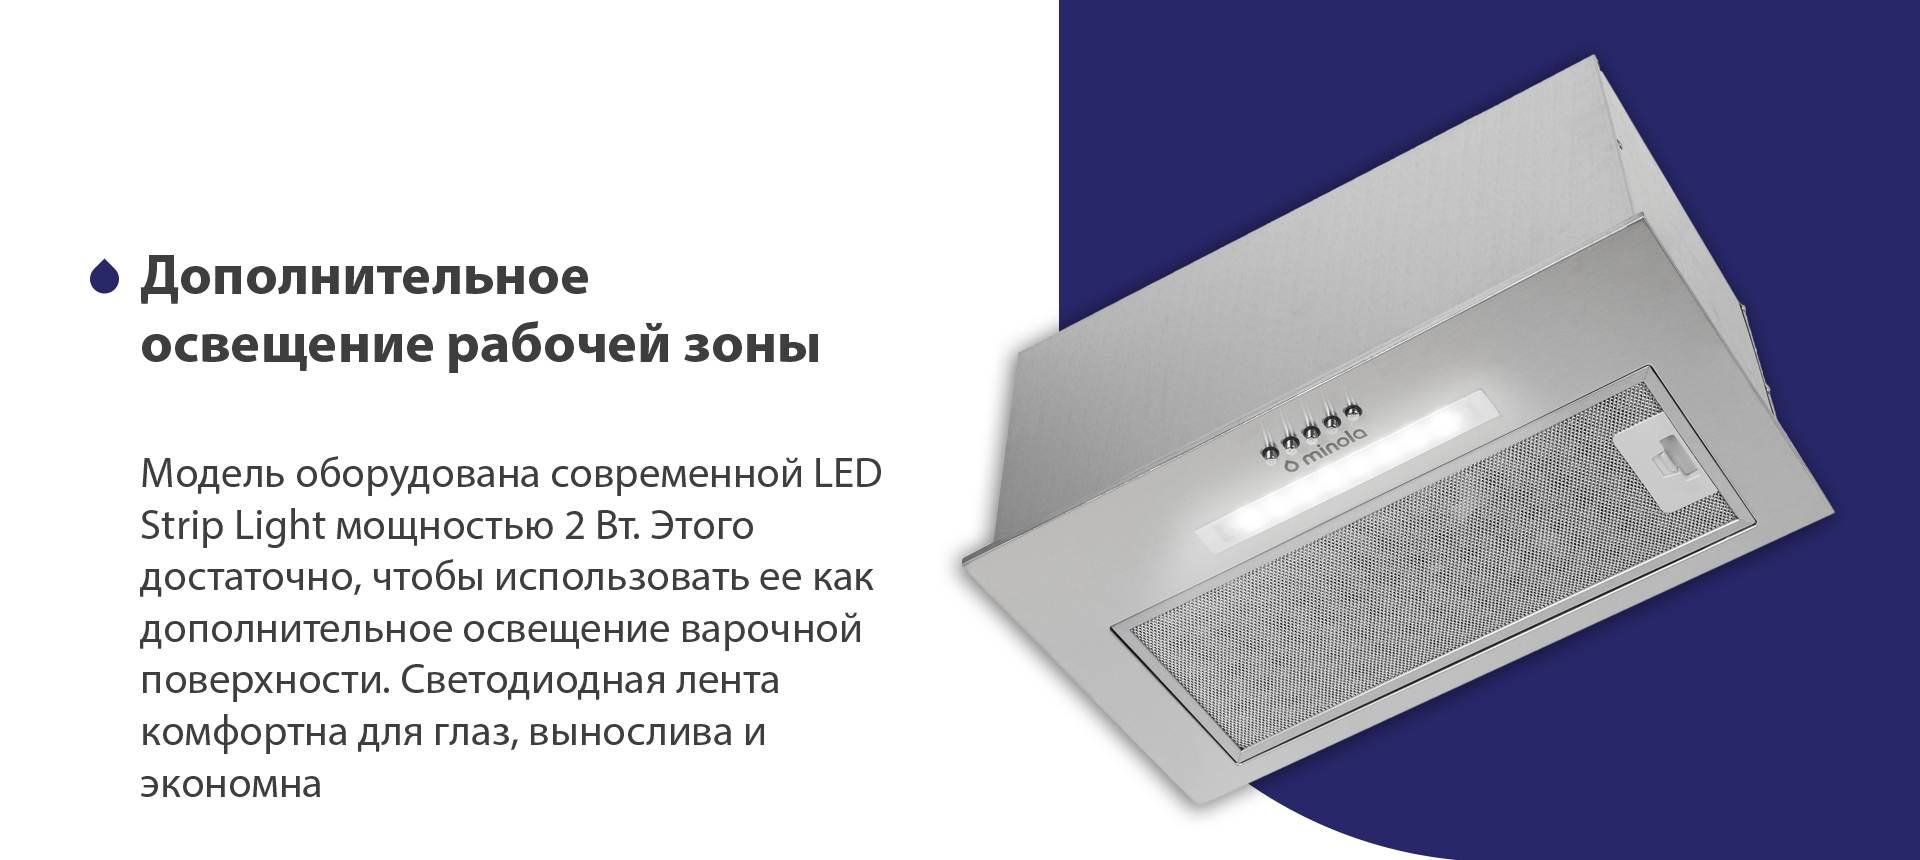 Модель оборудована современной LED Strip Light мощностью 2 Вт. Этого достаточно, чтобы использовать ее как дополнительное освещение варочной поверхности. Светодиодная лента комфортна для глаз, вынослива и экономна